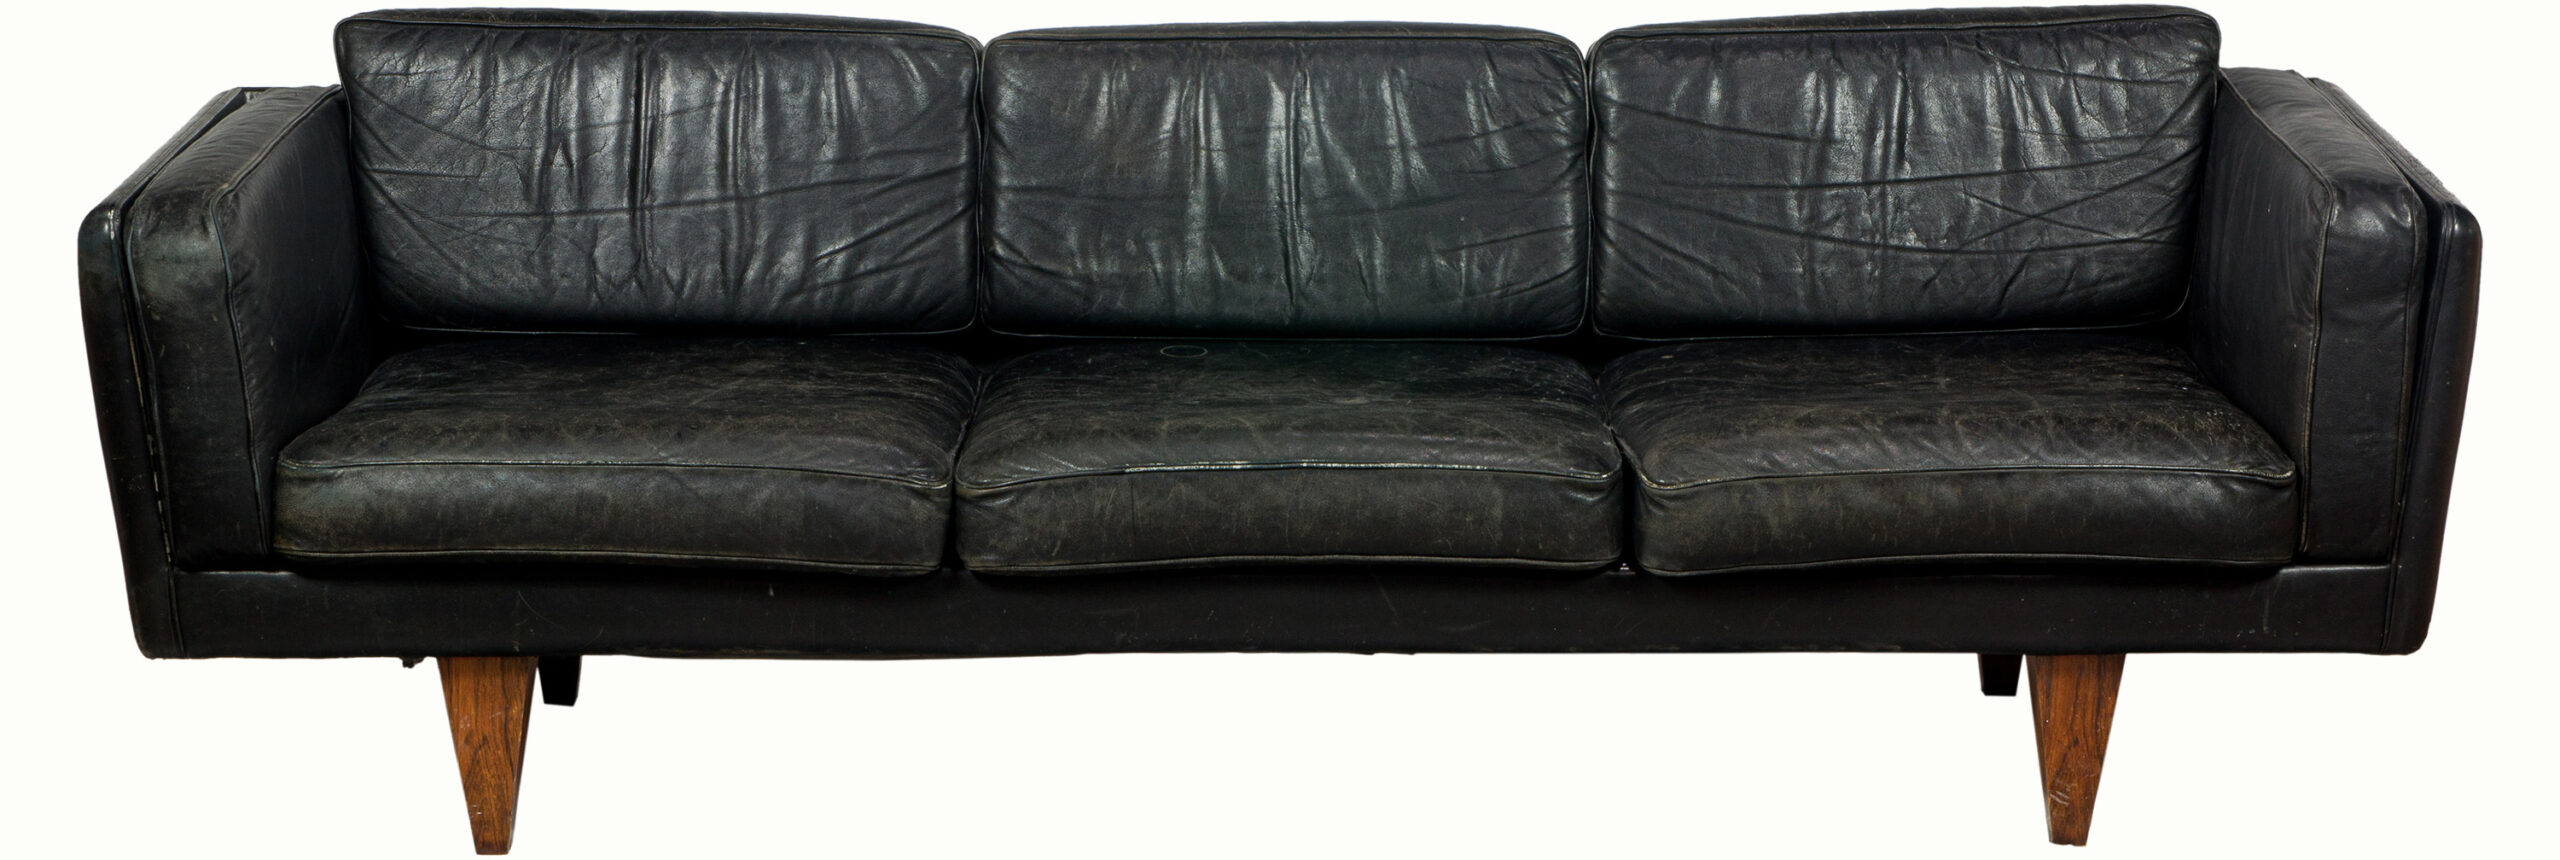 Illum Wikkelso Leather V-11 Sofa.